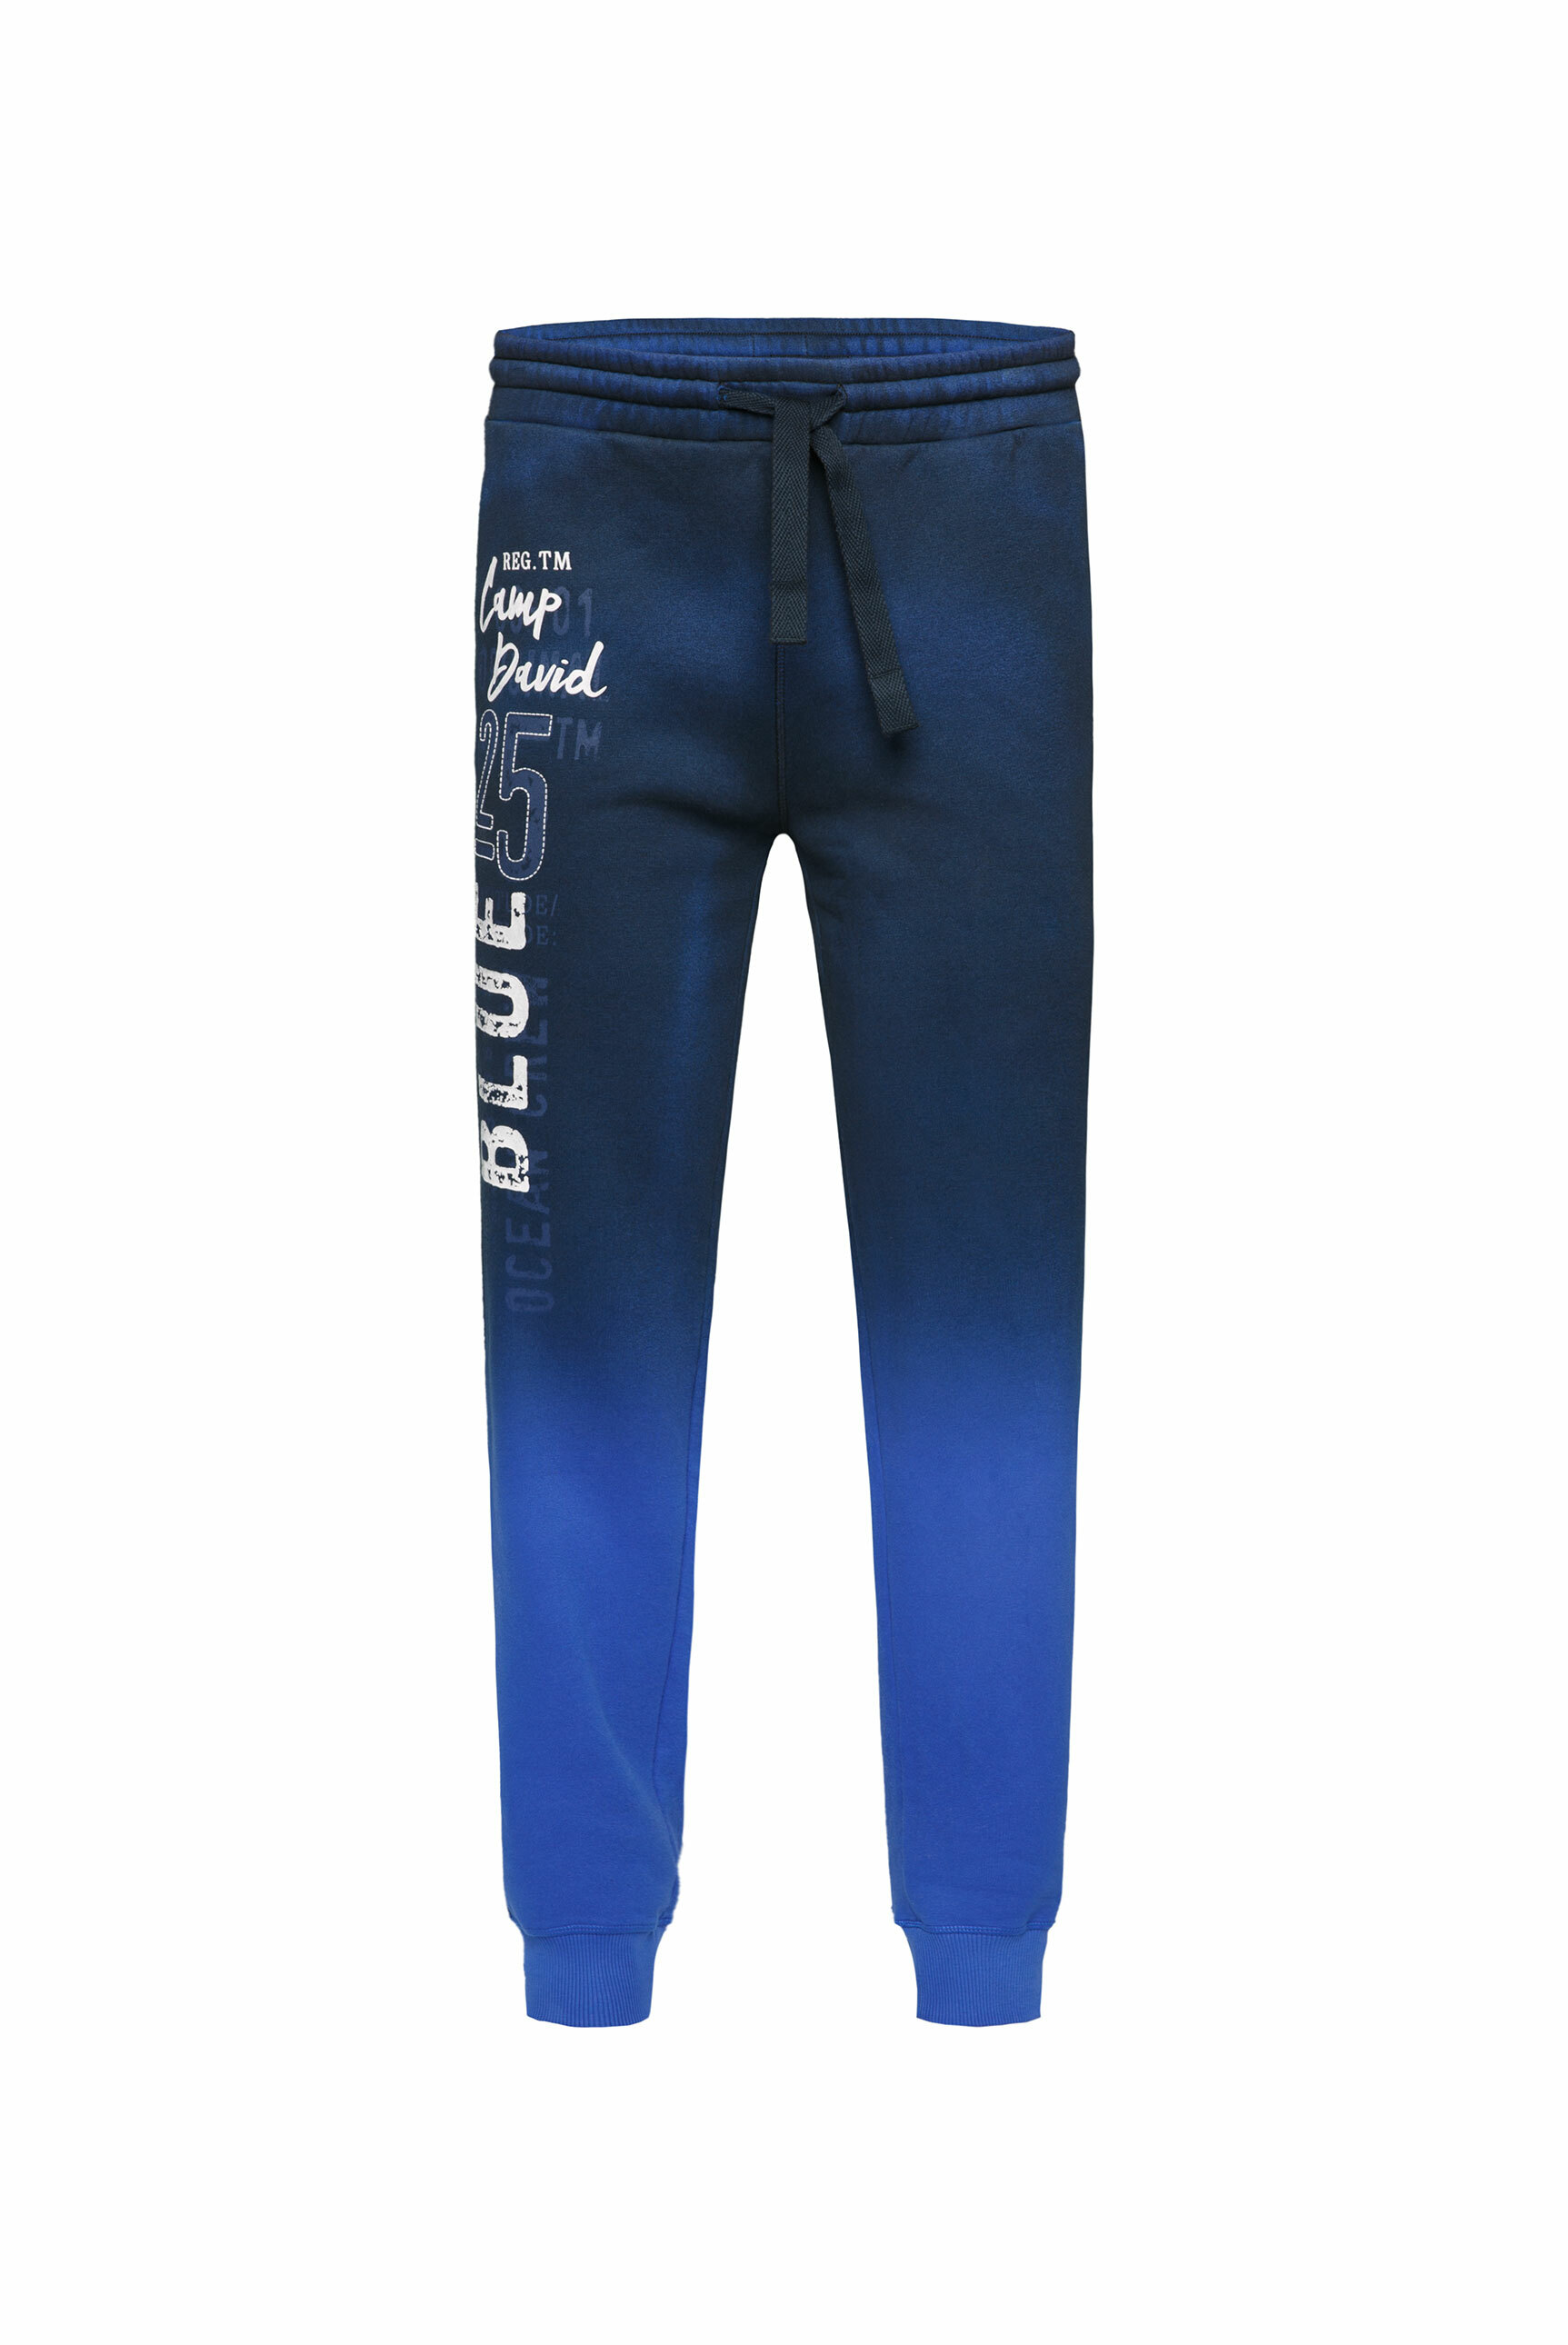 Odzież Mężczyźni CAMP DAVID Spodnie w kolorze Niebieskim 